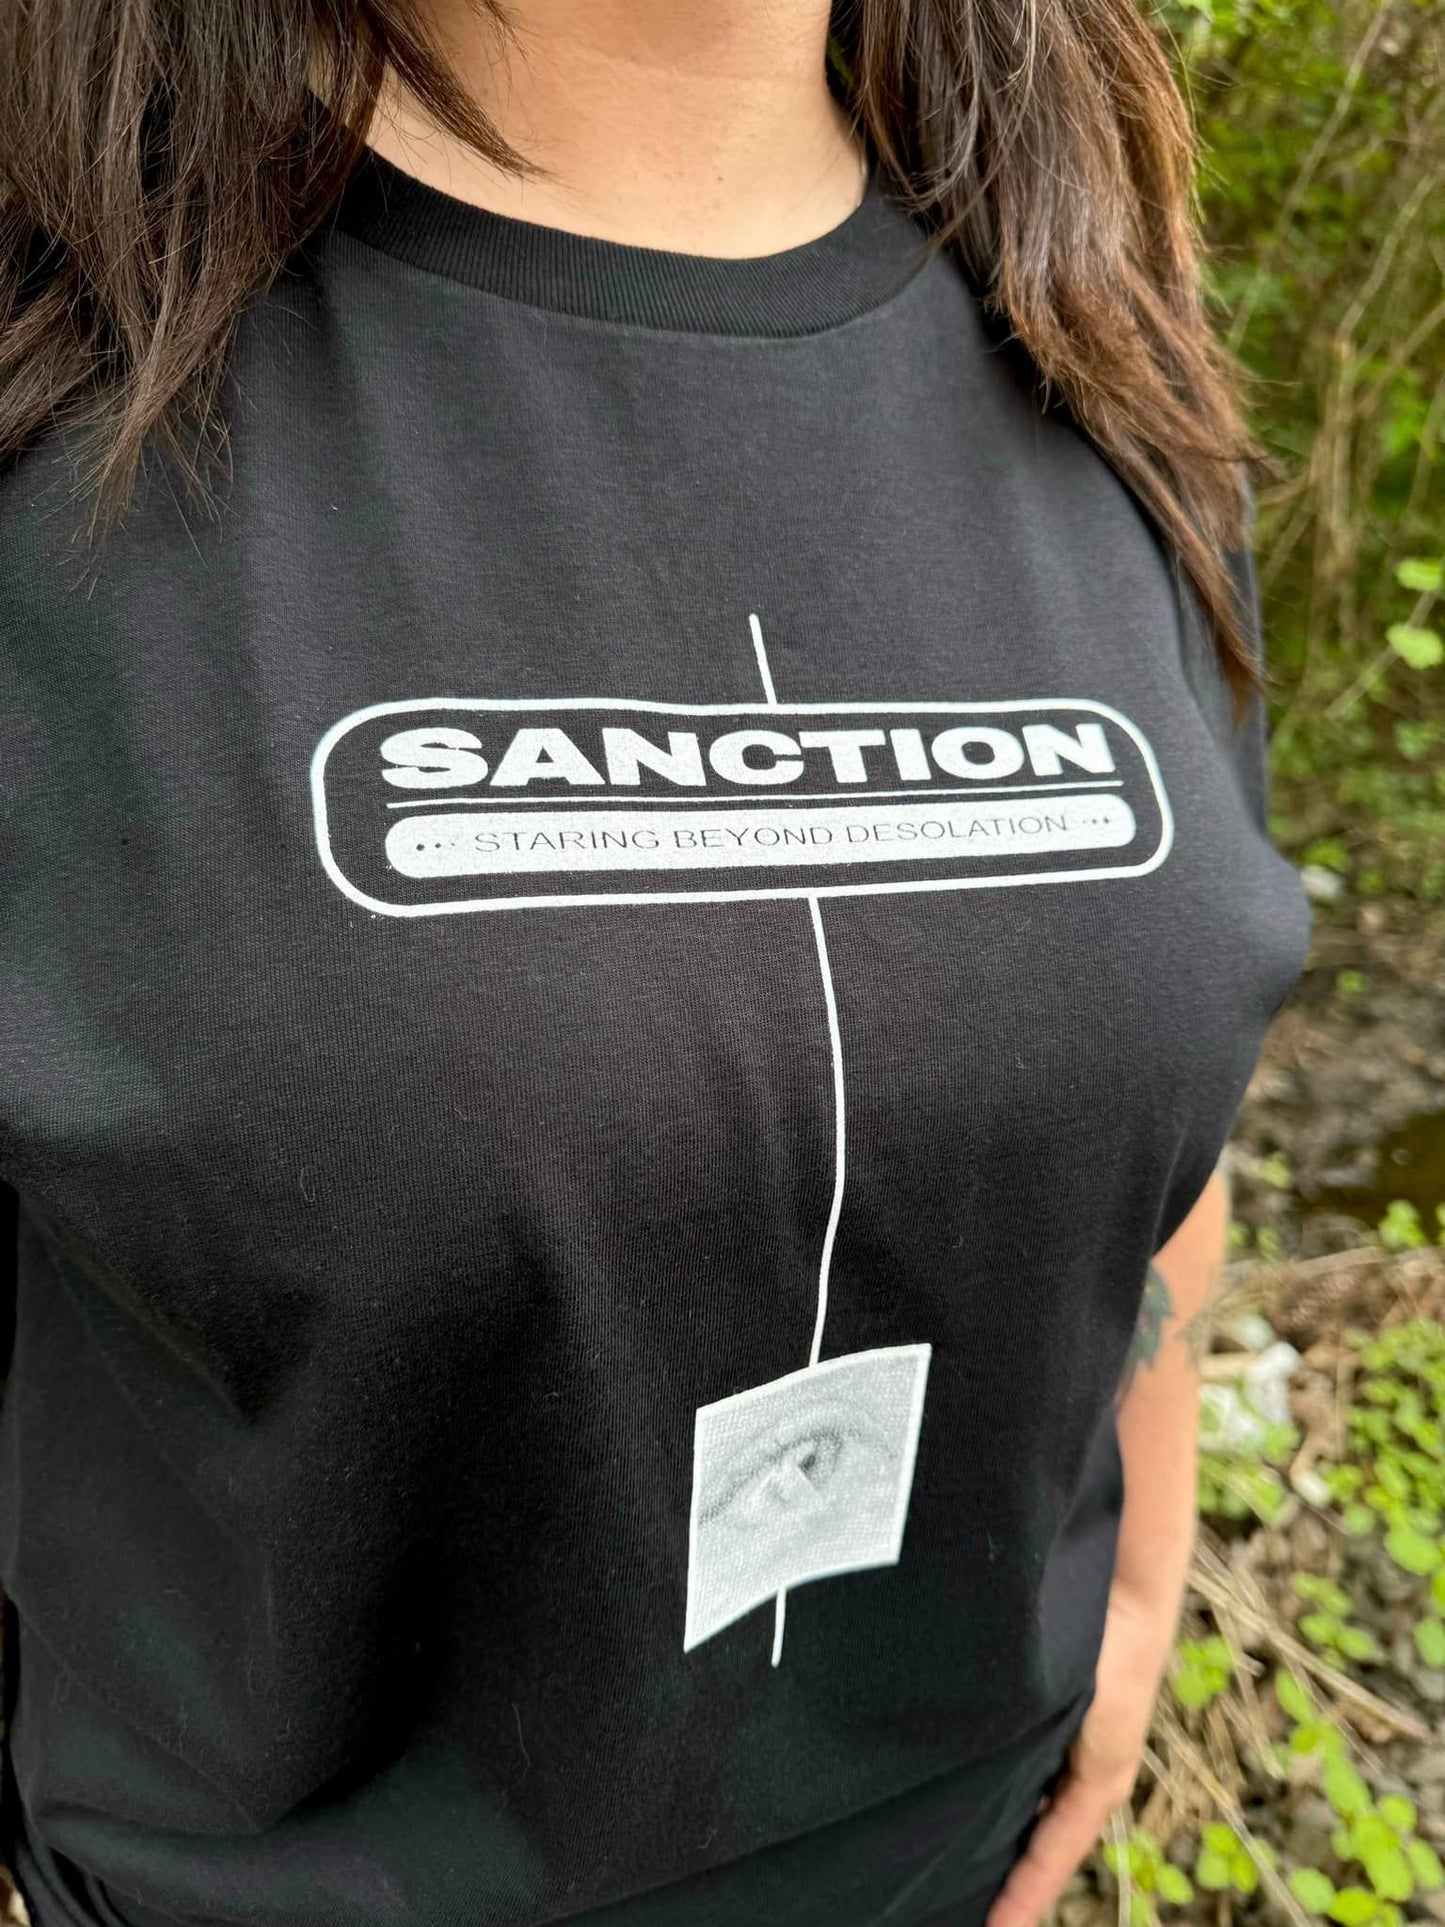 Sanction - Staring Beyond Desolation Shirt